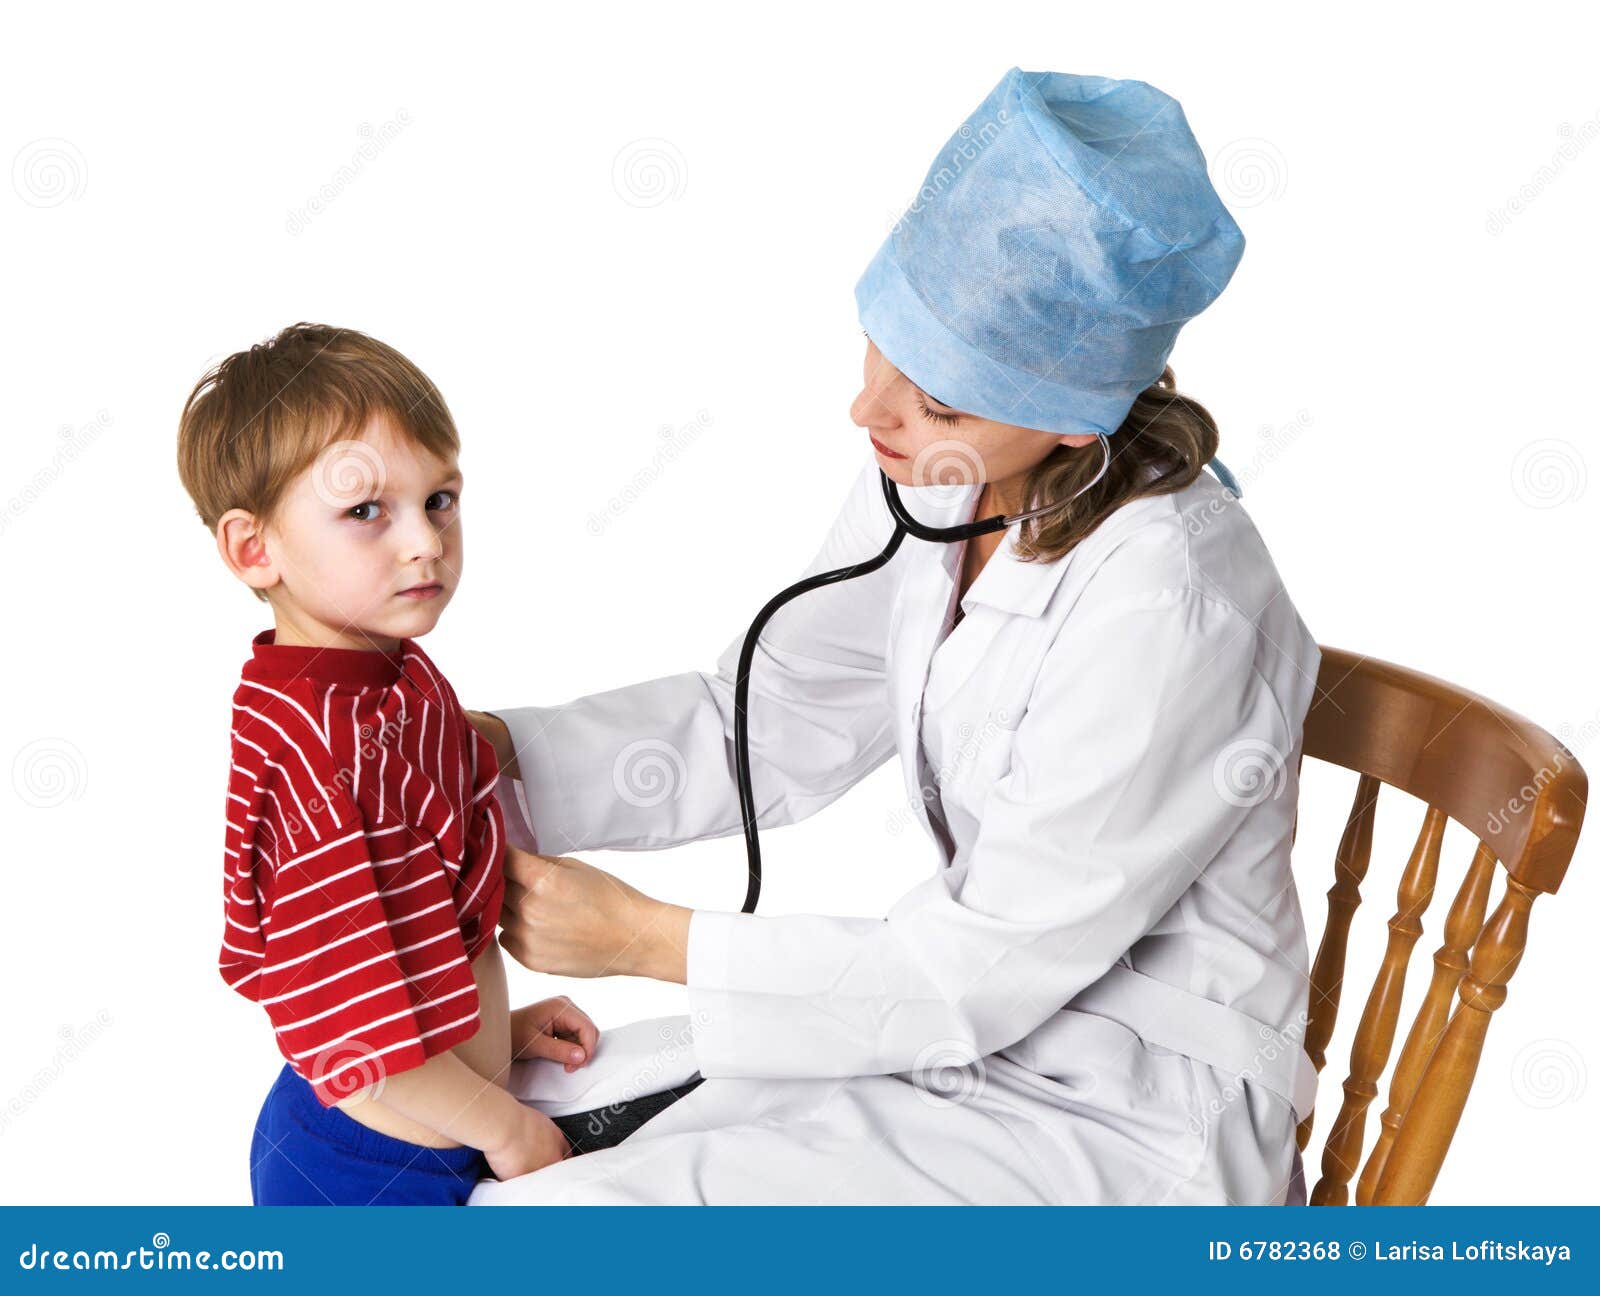 Родители вызвали врача. Педиатр картинка. Ребенок с врачом вертикально. Доктор лечит мальчика. Дети мальчики у врача.